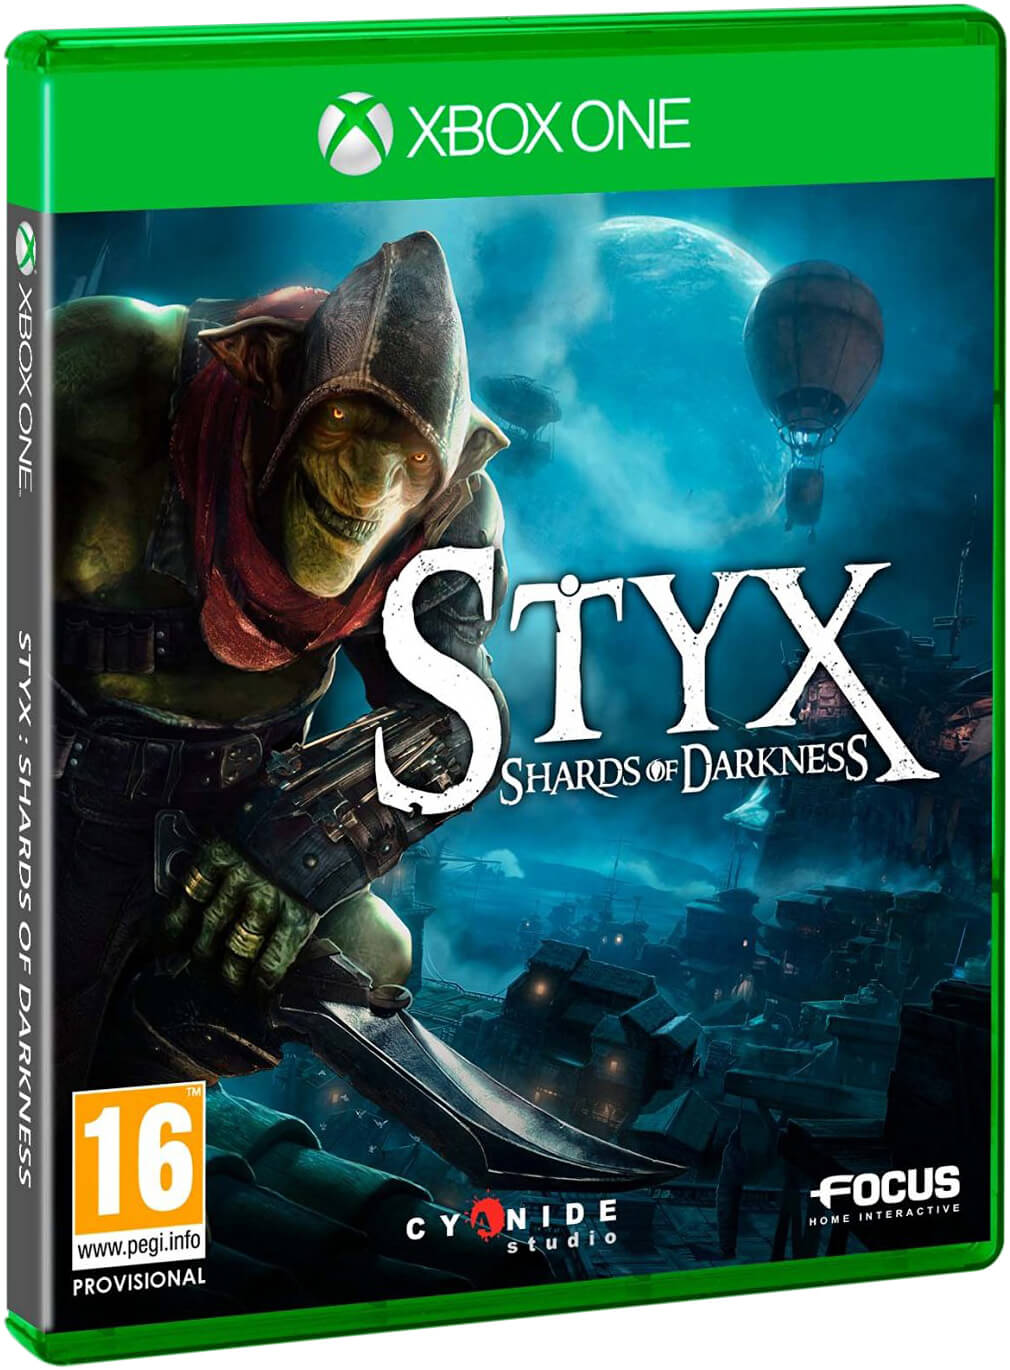 Desaparecido uno cavar Styx: Shards of Darkness Xbox One Xbox One | Zavvi España